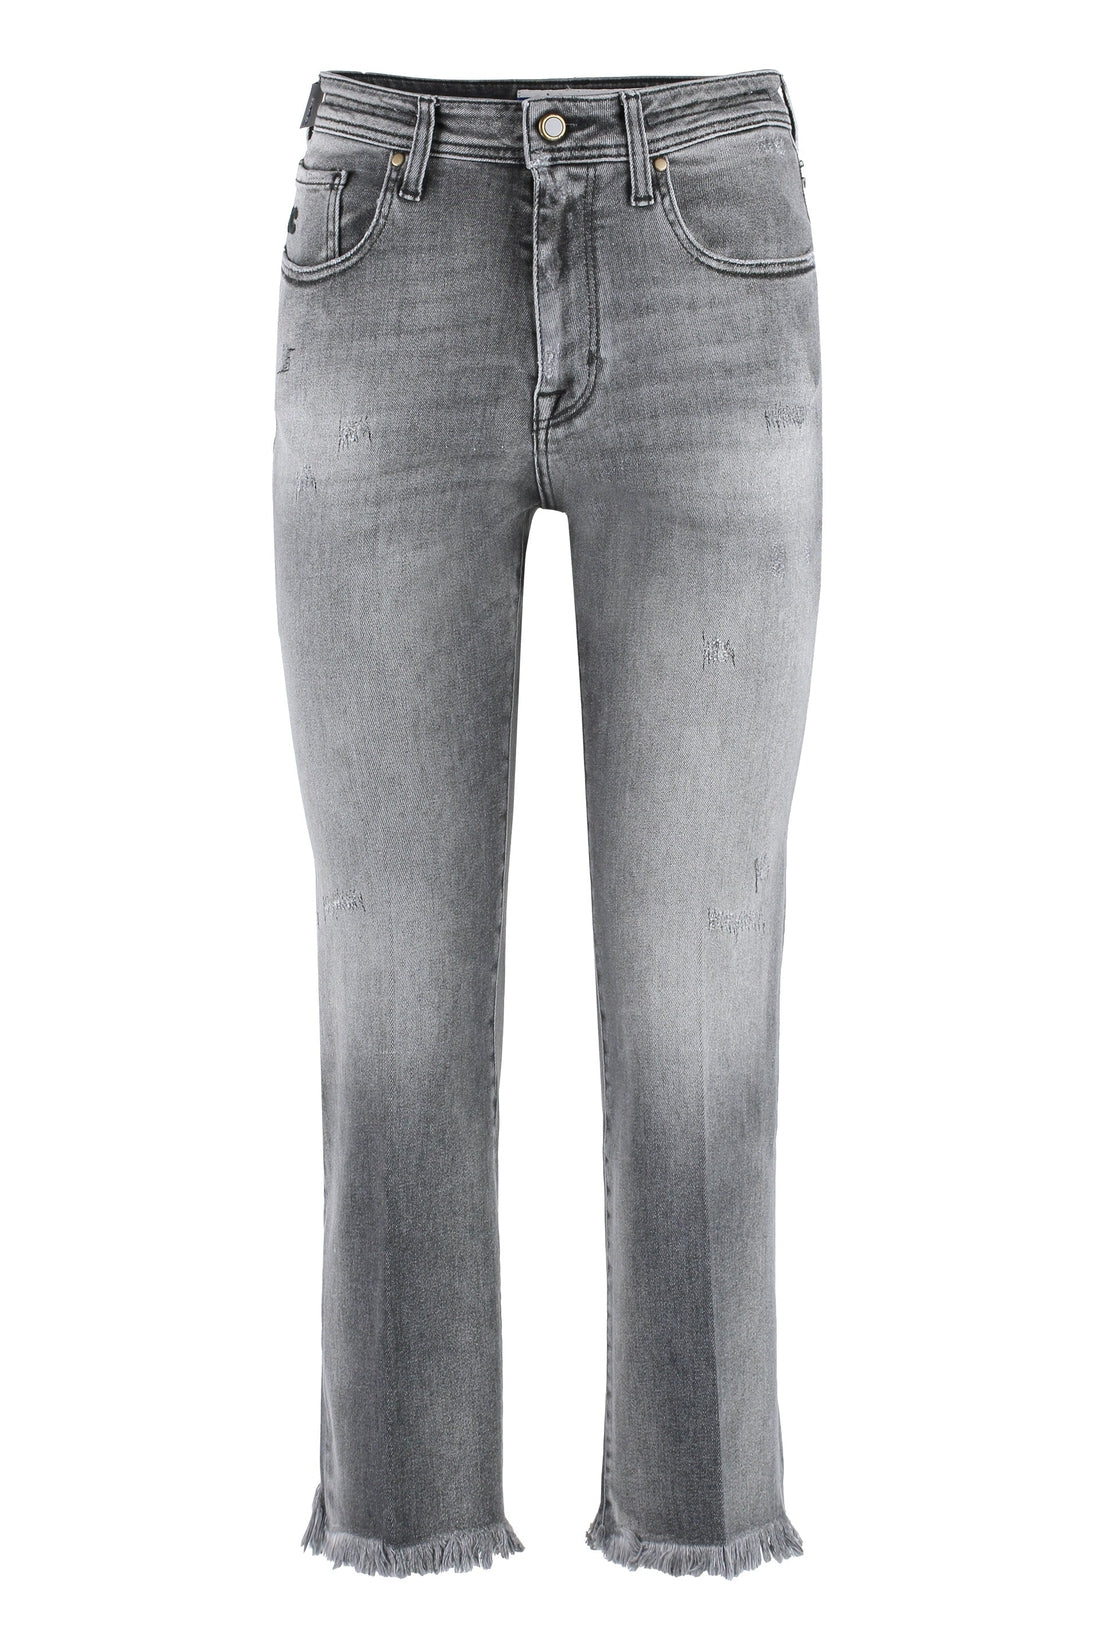 Jacob Cohen-OUTLET-SALE-Cropped jeans-ARCHIVIST